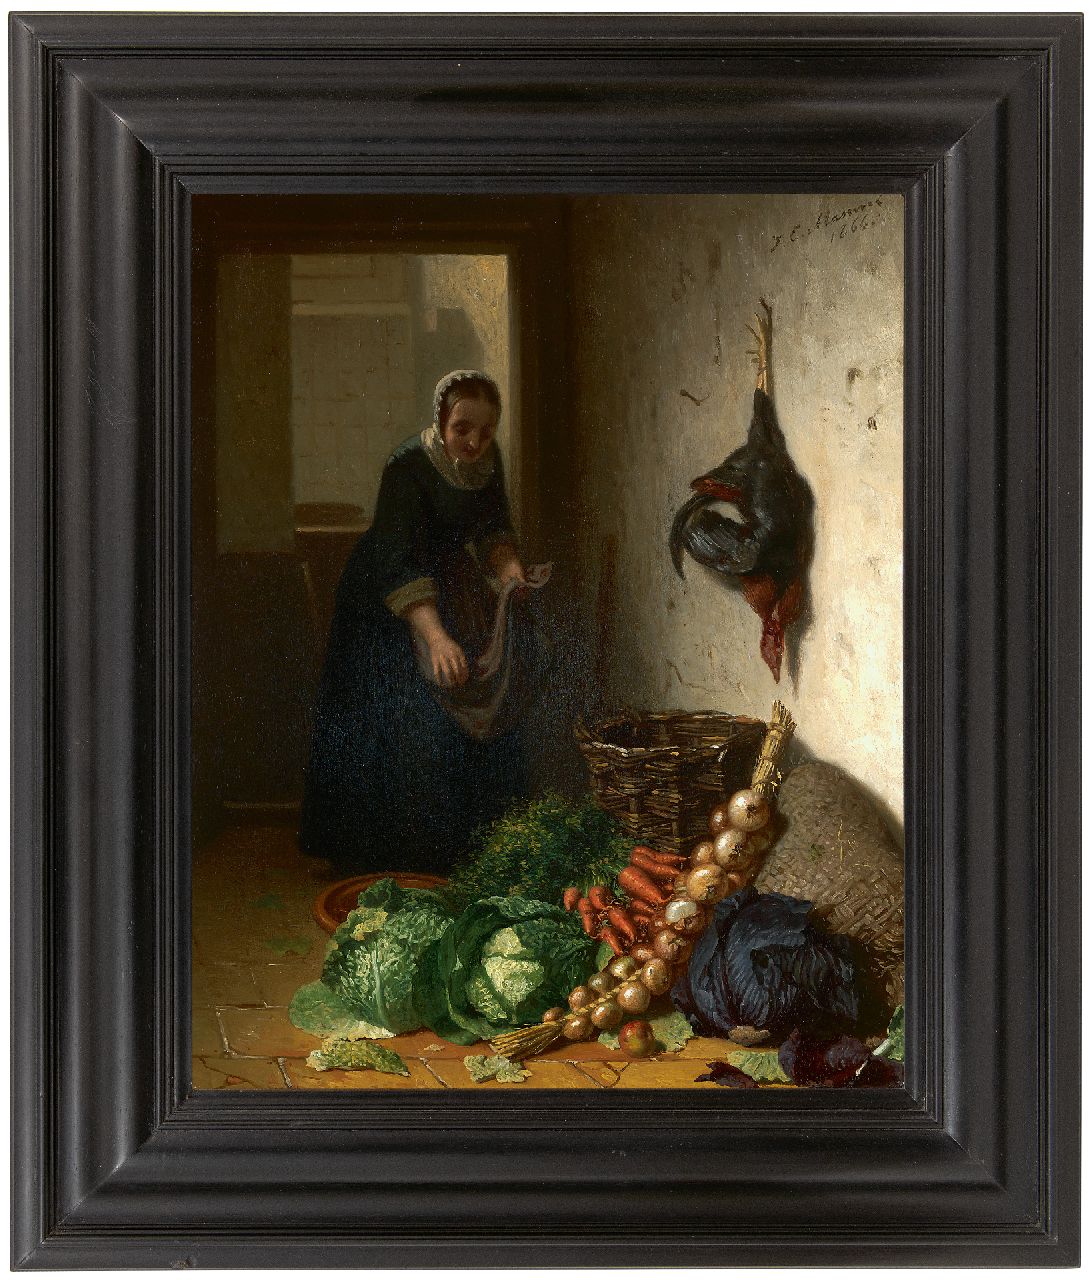 Masurel J.E.  | Johannes Engel Masurel | Schilderijen te koop aangeboden | Keukeninterieur, olieverf op paneel 31,2 x 25,3 cm, gesigneerd rechtsboven en gedateerd 1866